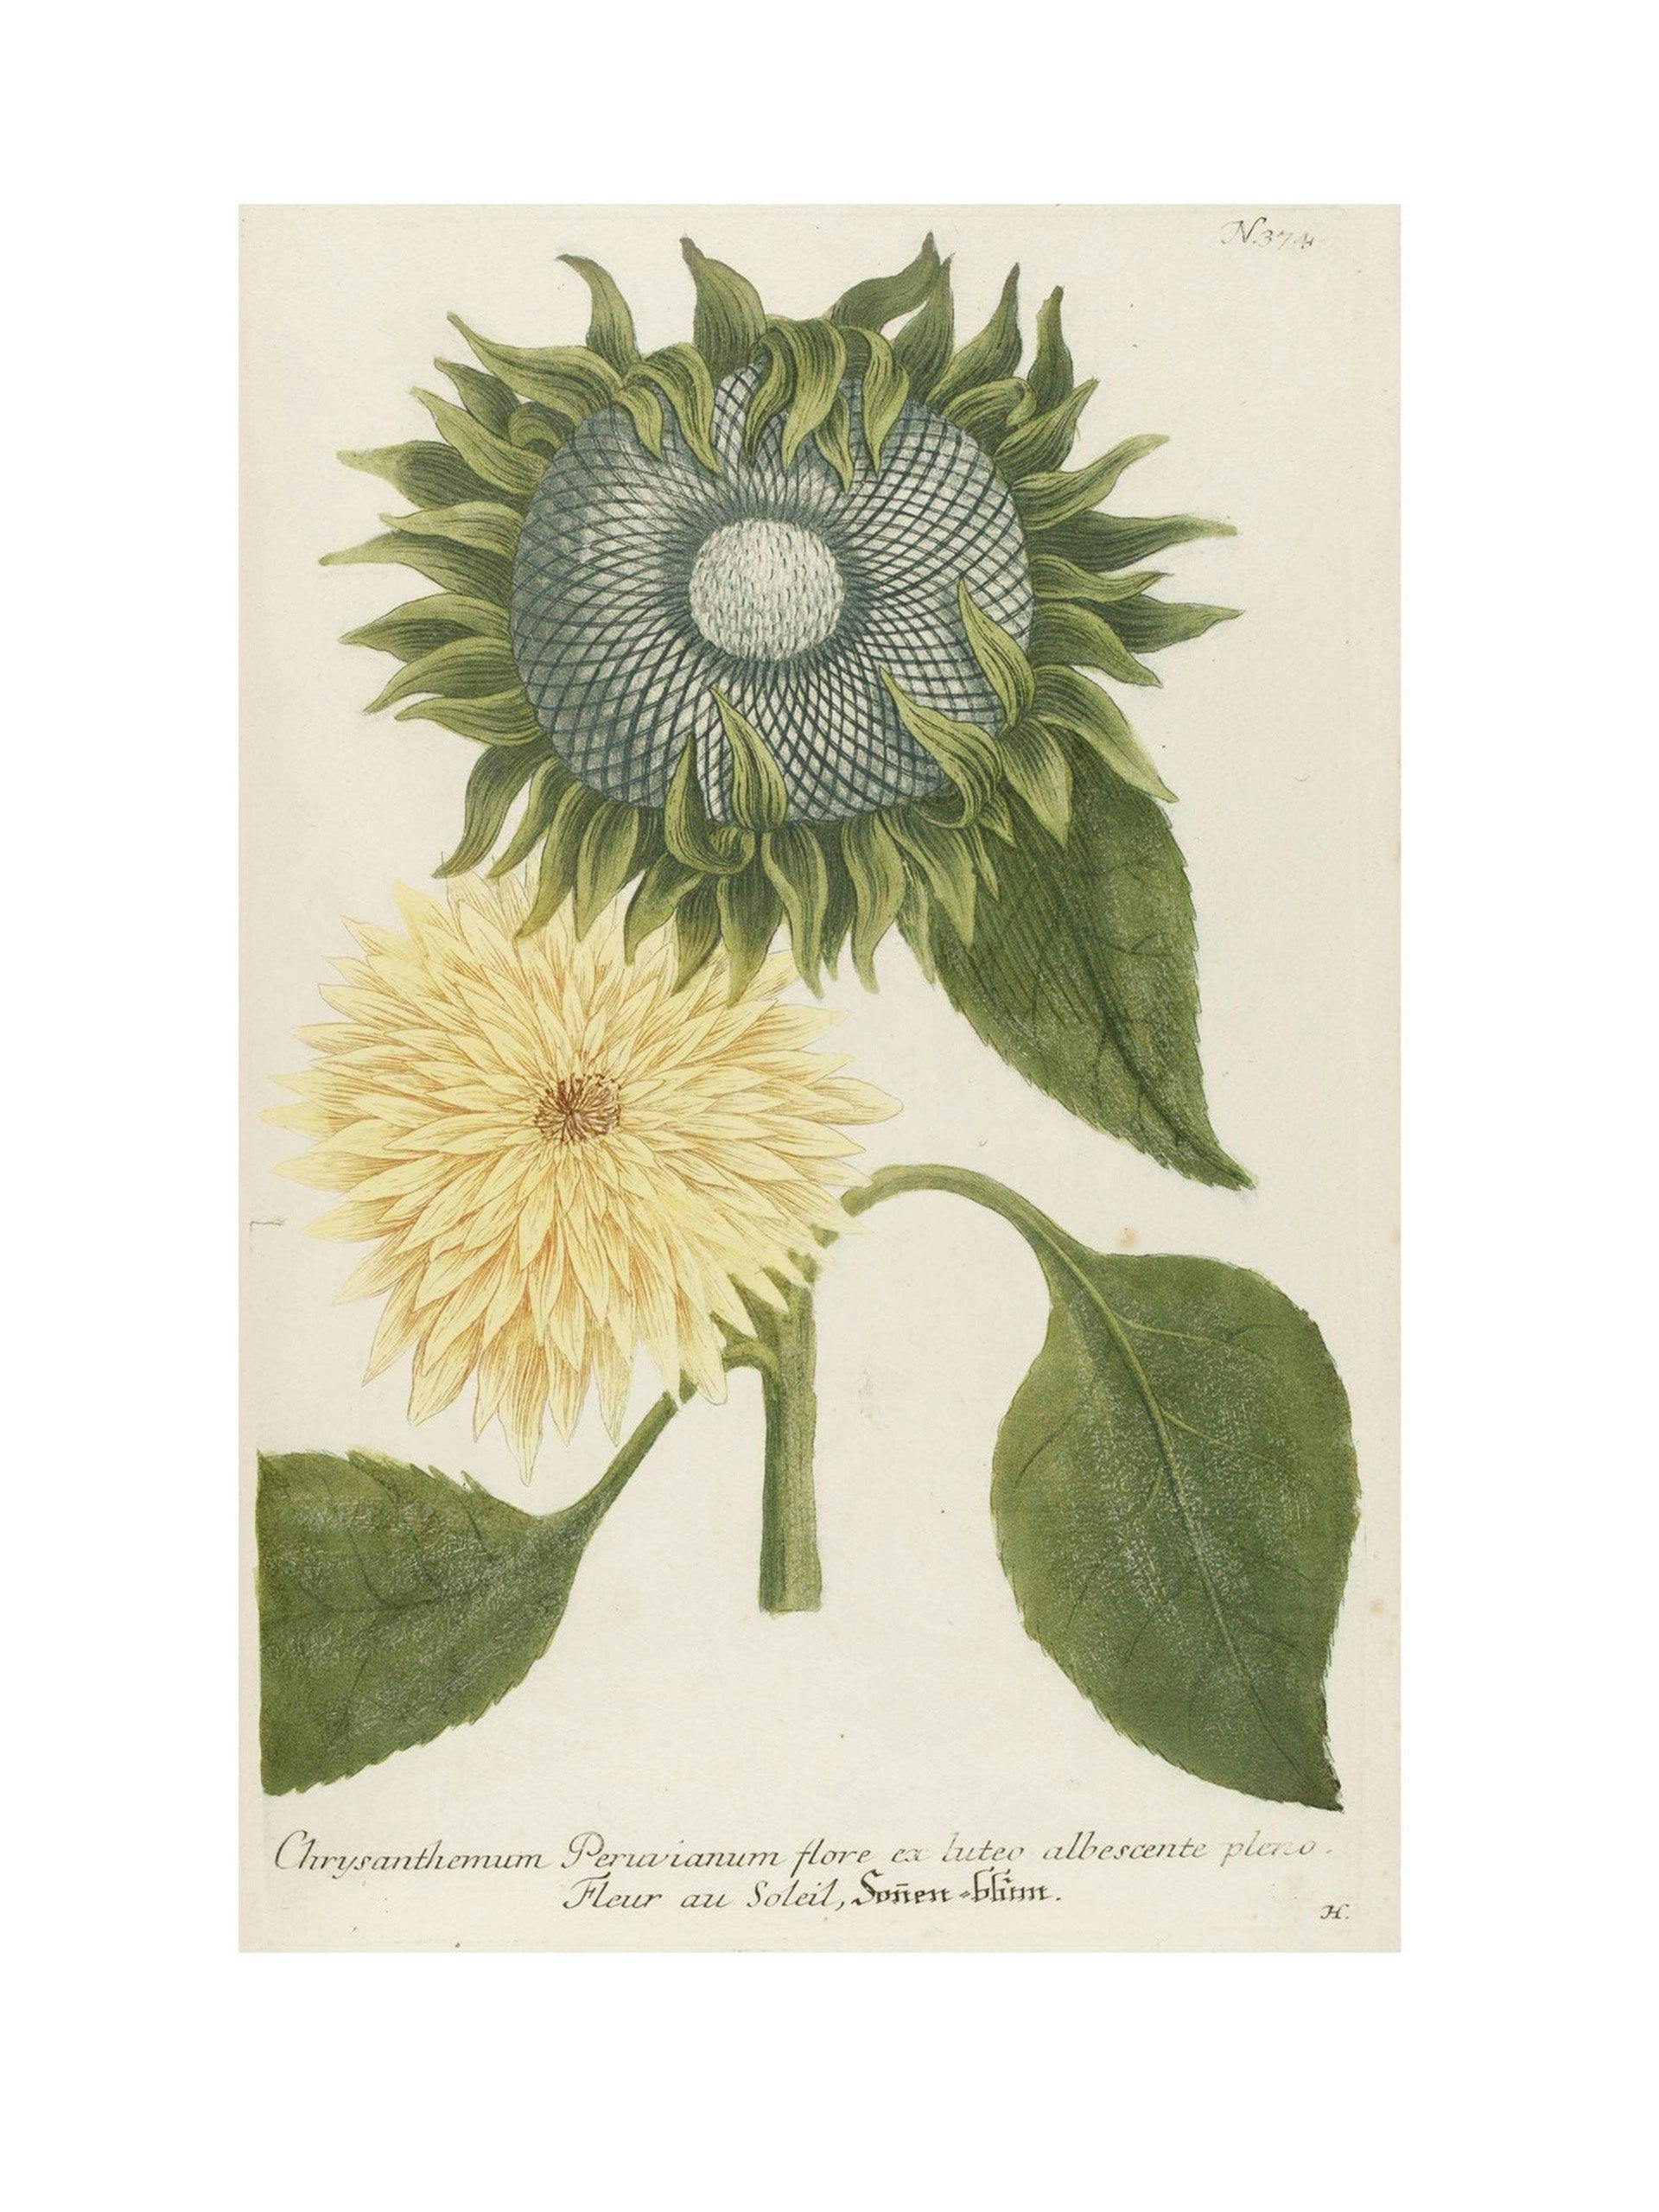 Chrysanthemum Indicum Maximum botanical print